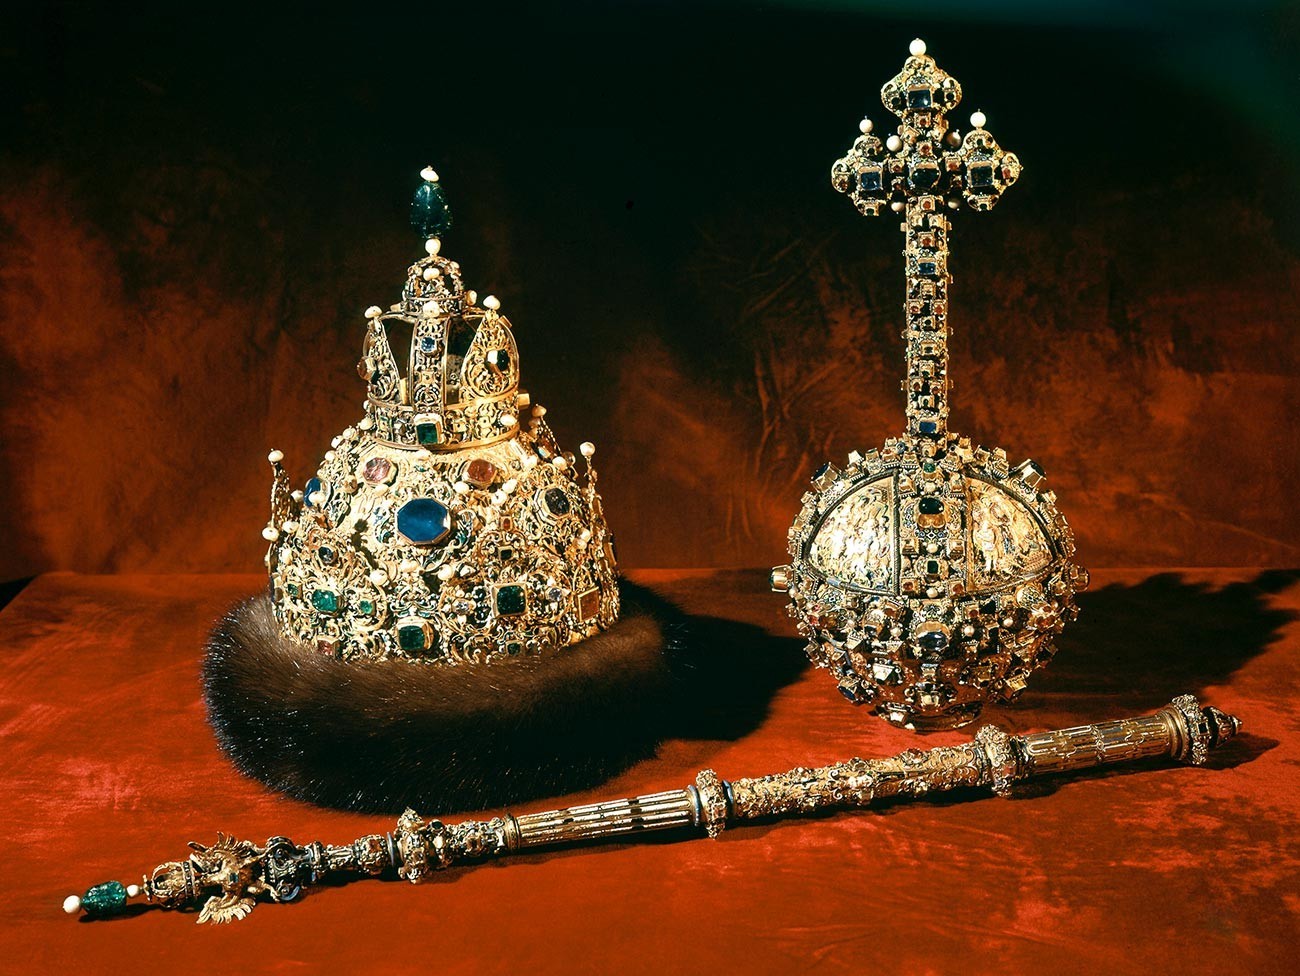 Ruske carske regalije: krona, žezlo in krogla
